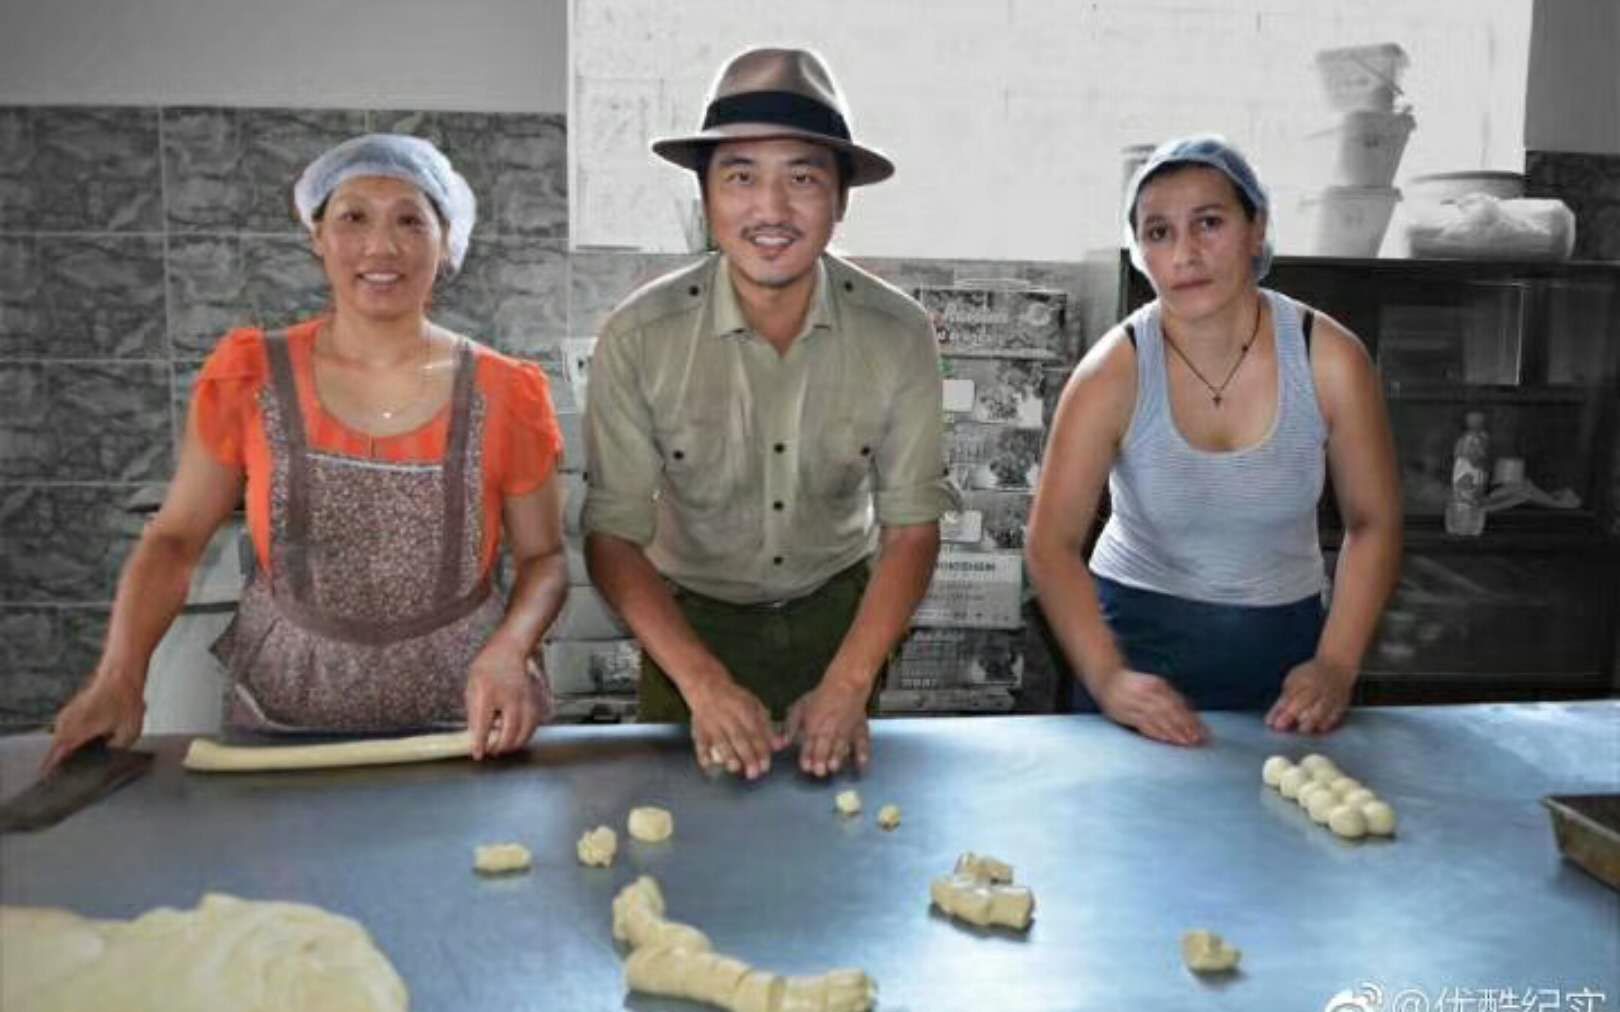 格鲁吉亚华人面包厂,中国人和外国人共同制作可口糕点